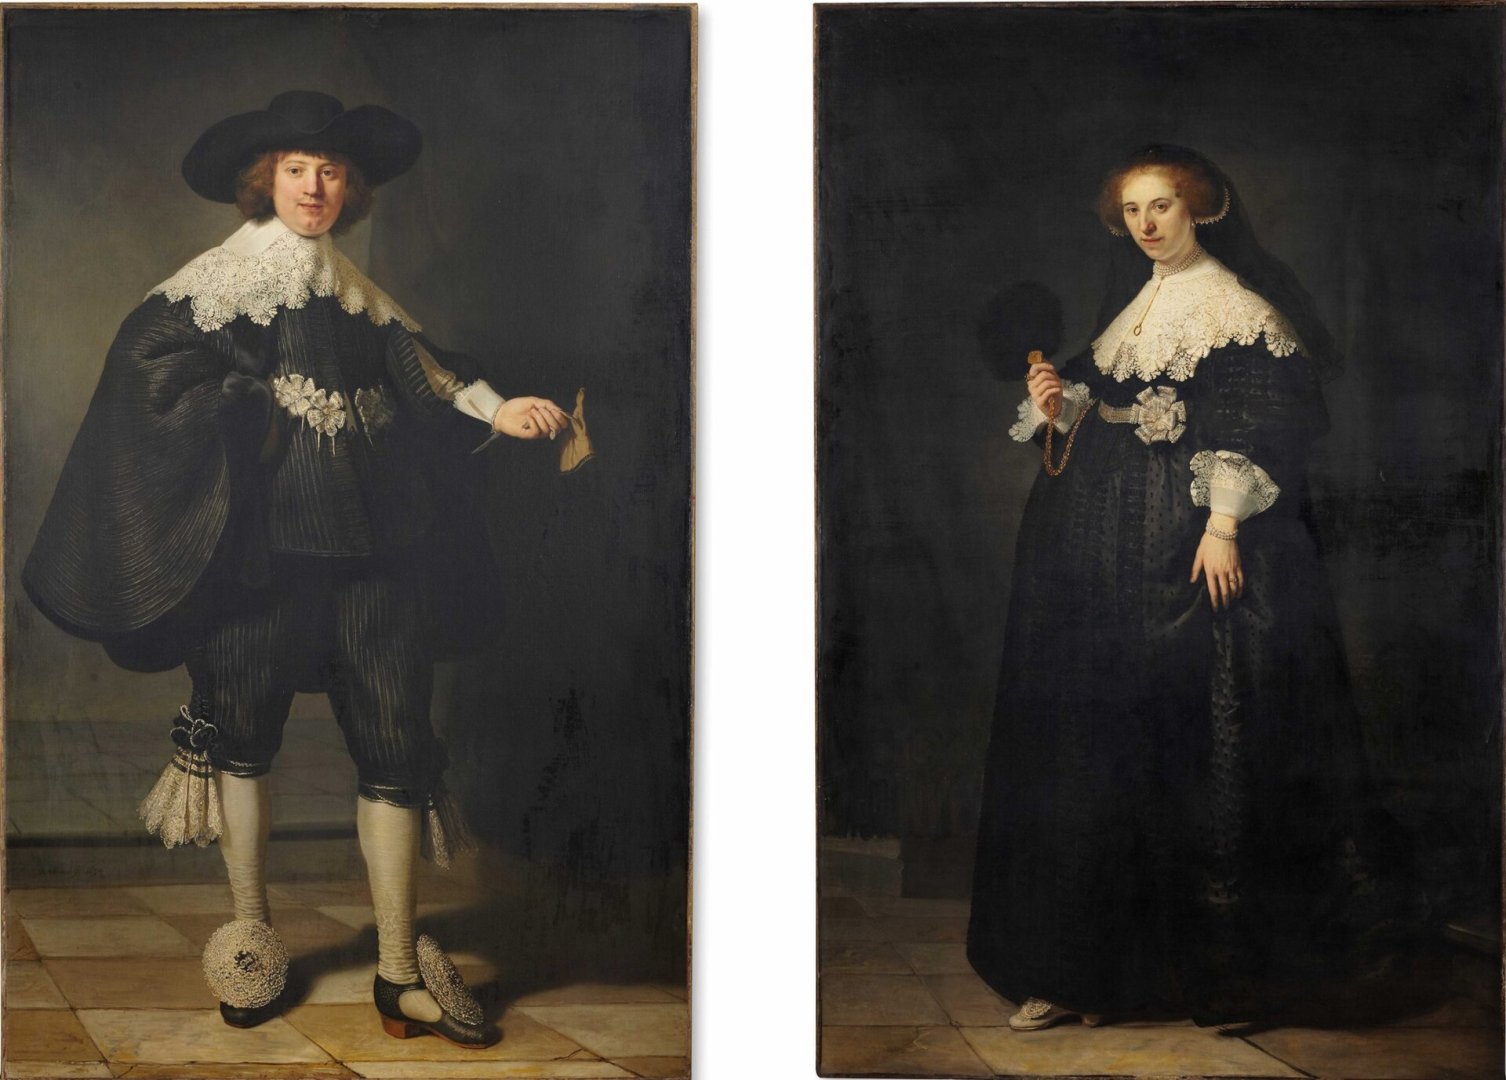 Rembrandt van Rijn: Maerten Soolmans és felesége, Oopjen Coppit portréi – forrás: Wikipedia